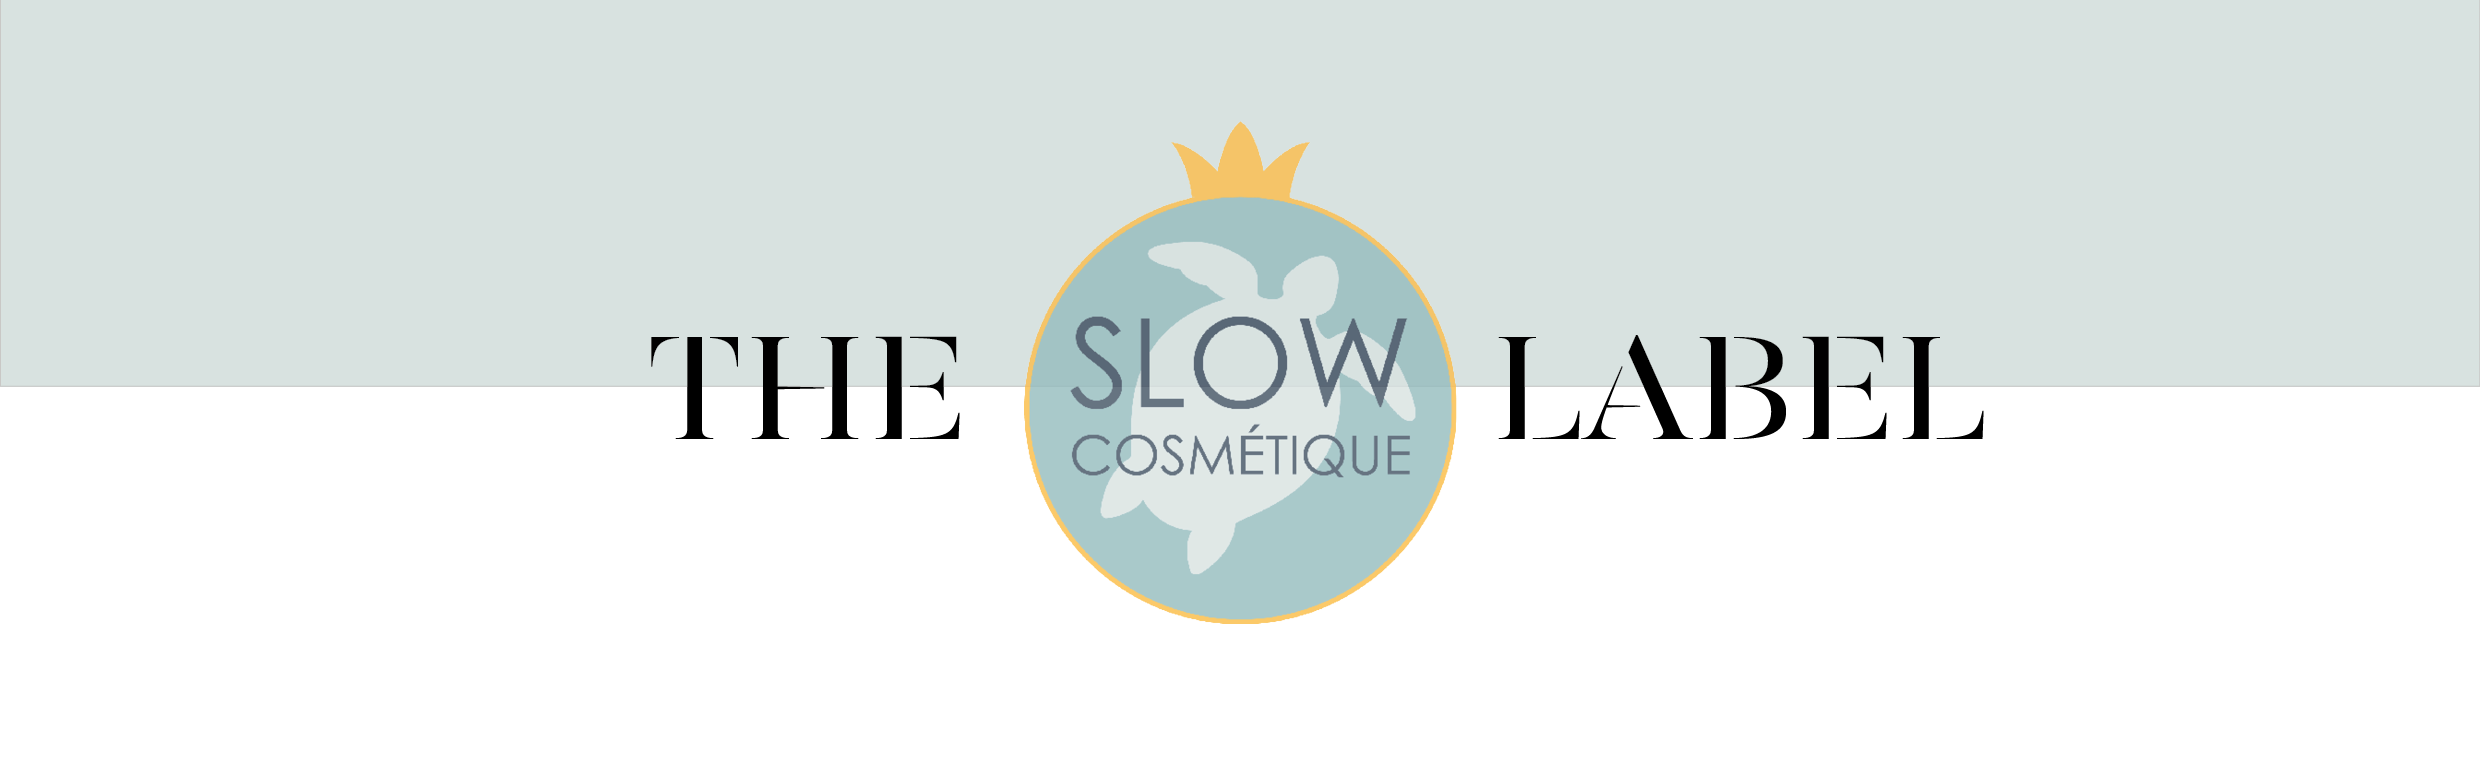 Slow cosmétique_EN.png